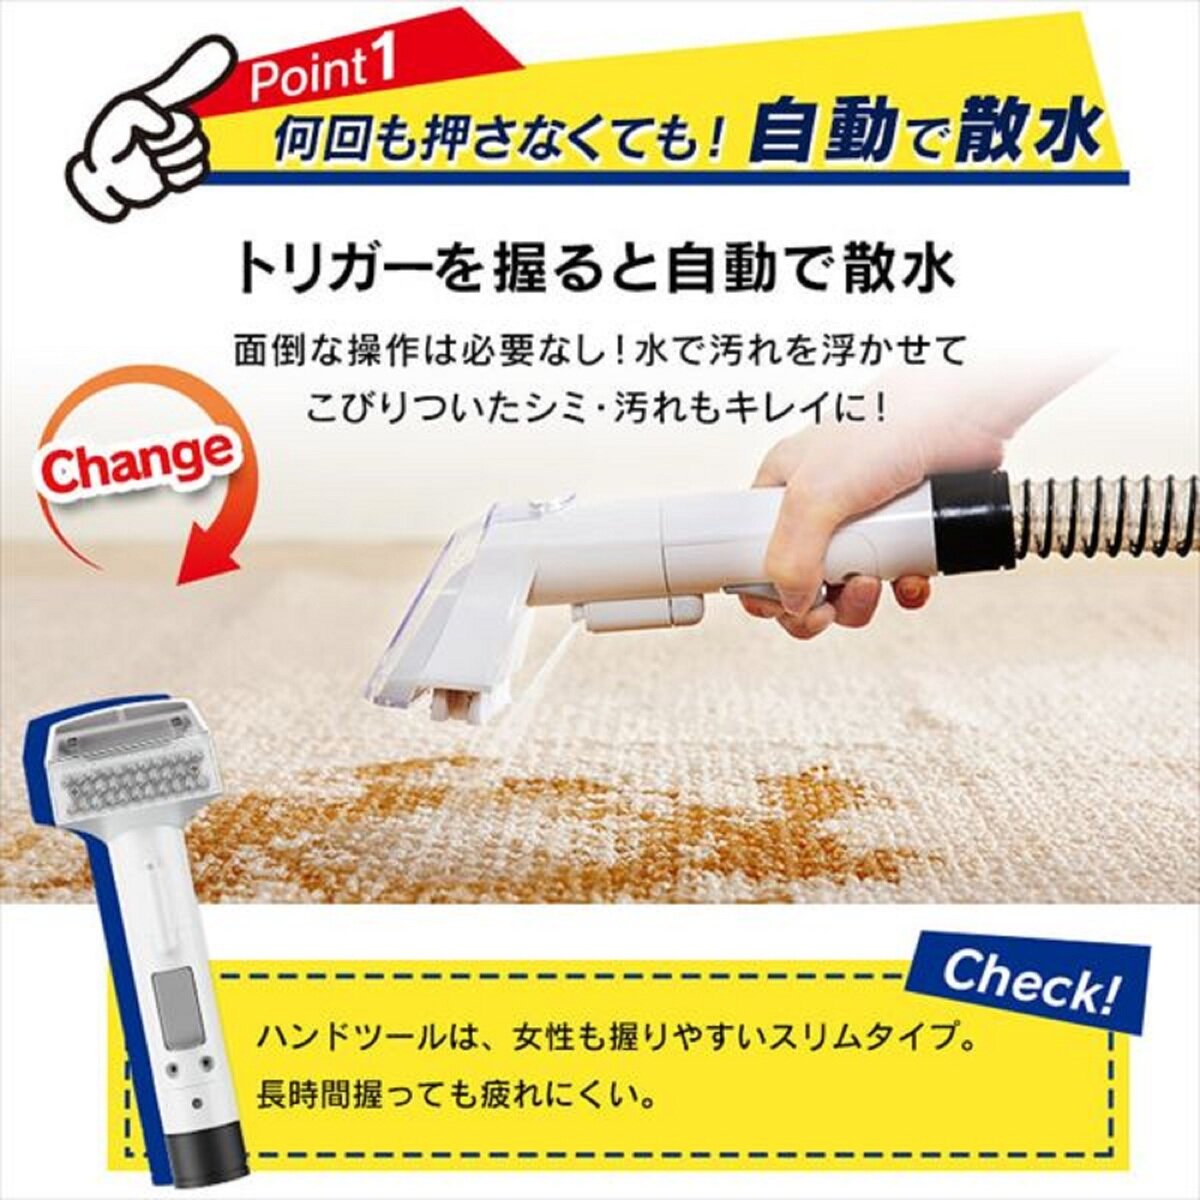 生活家電 掃除機 アイリスオーヤマ リンサークリーナー RNS-P10-W | Costco Japan